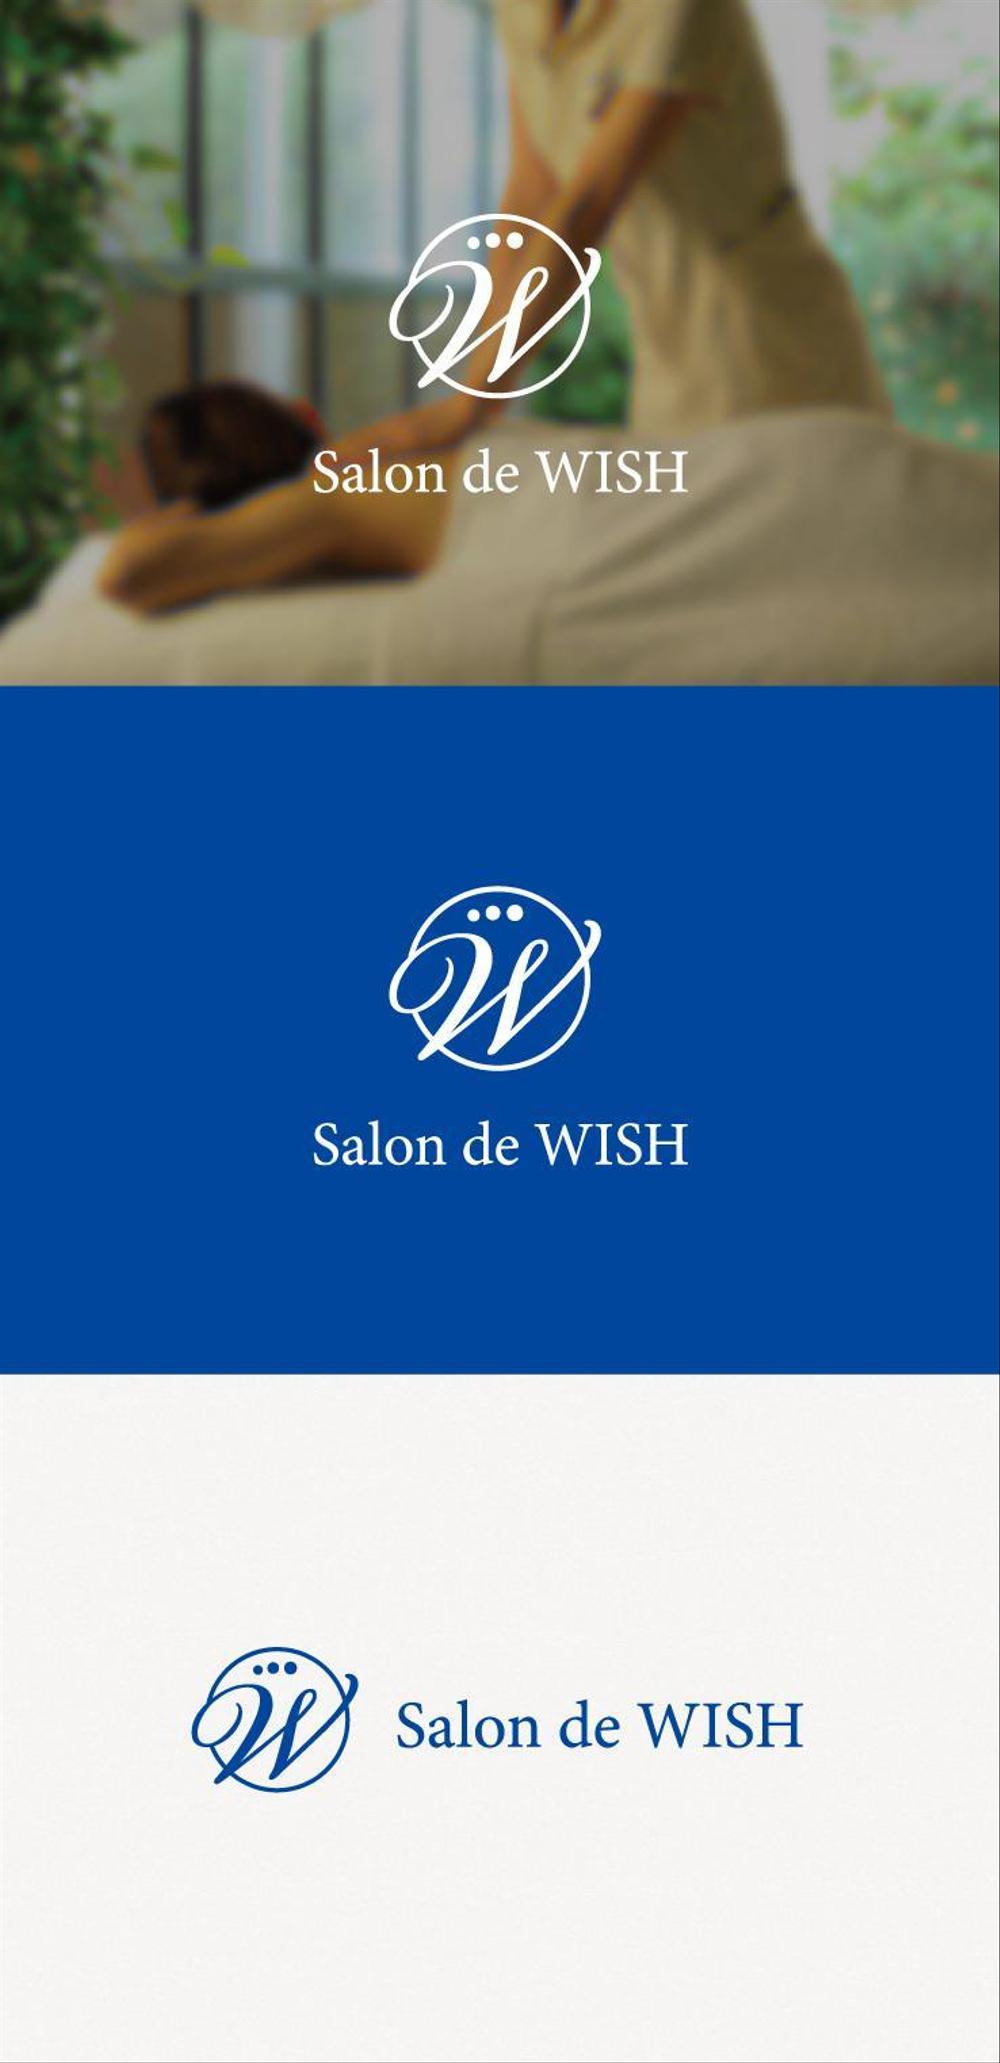 エステサロンの「Salon de WISH」のロゴ